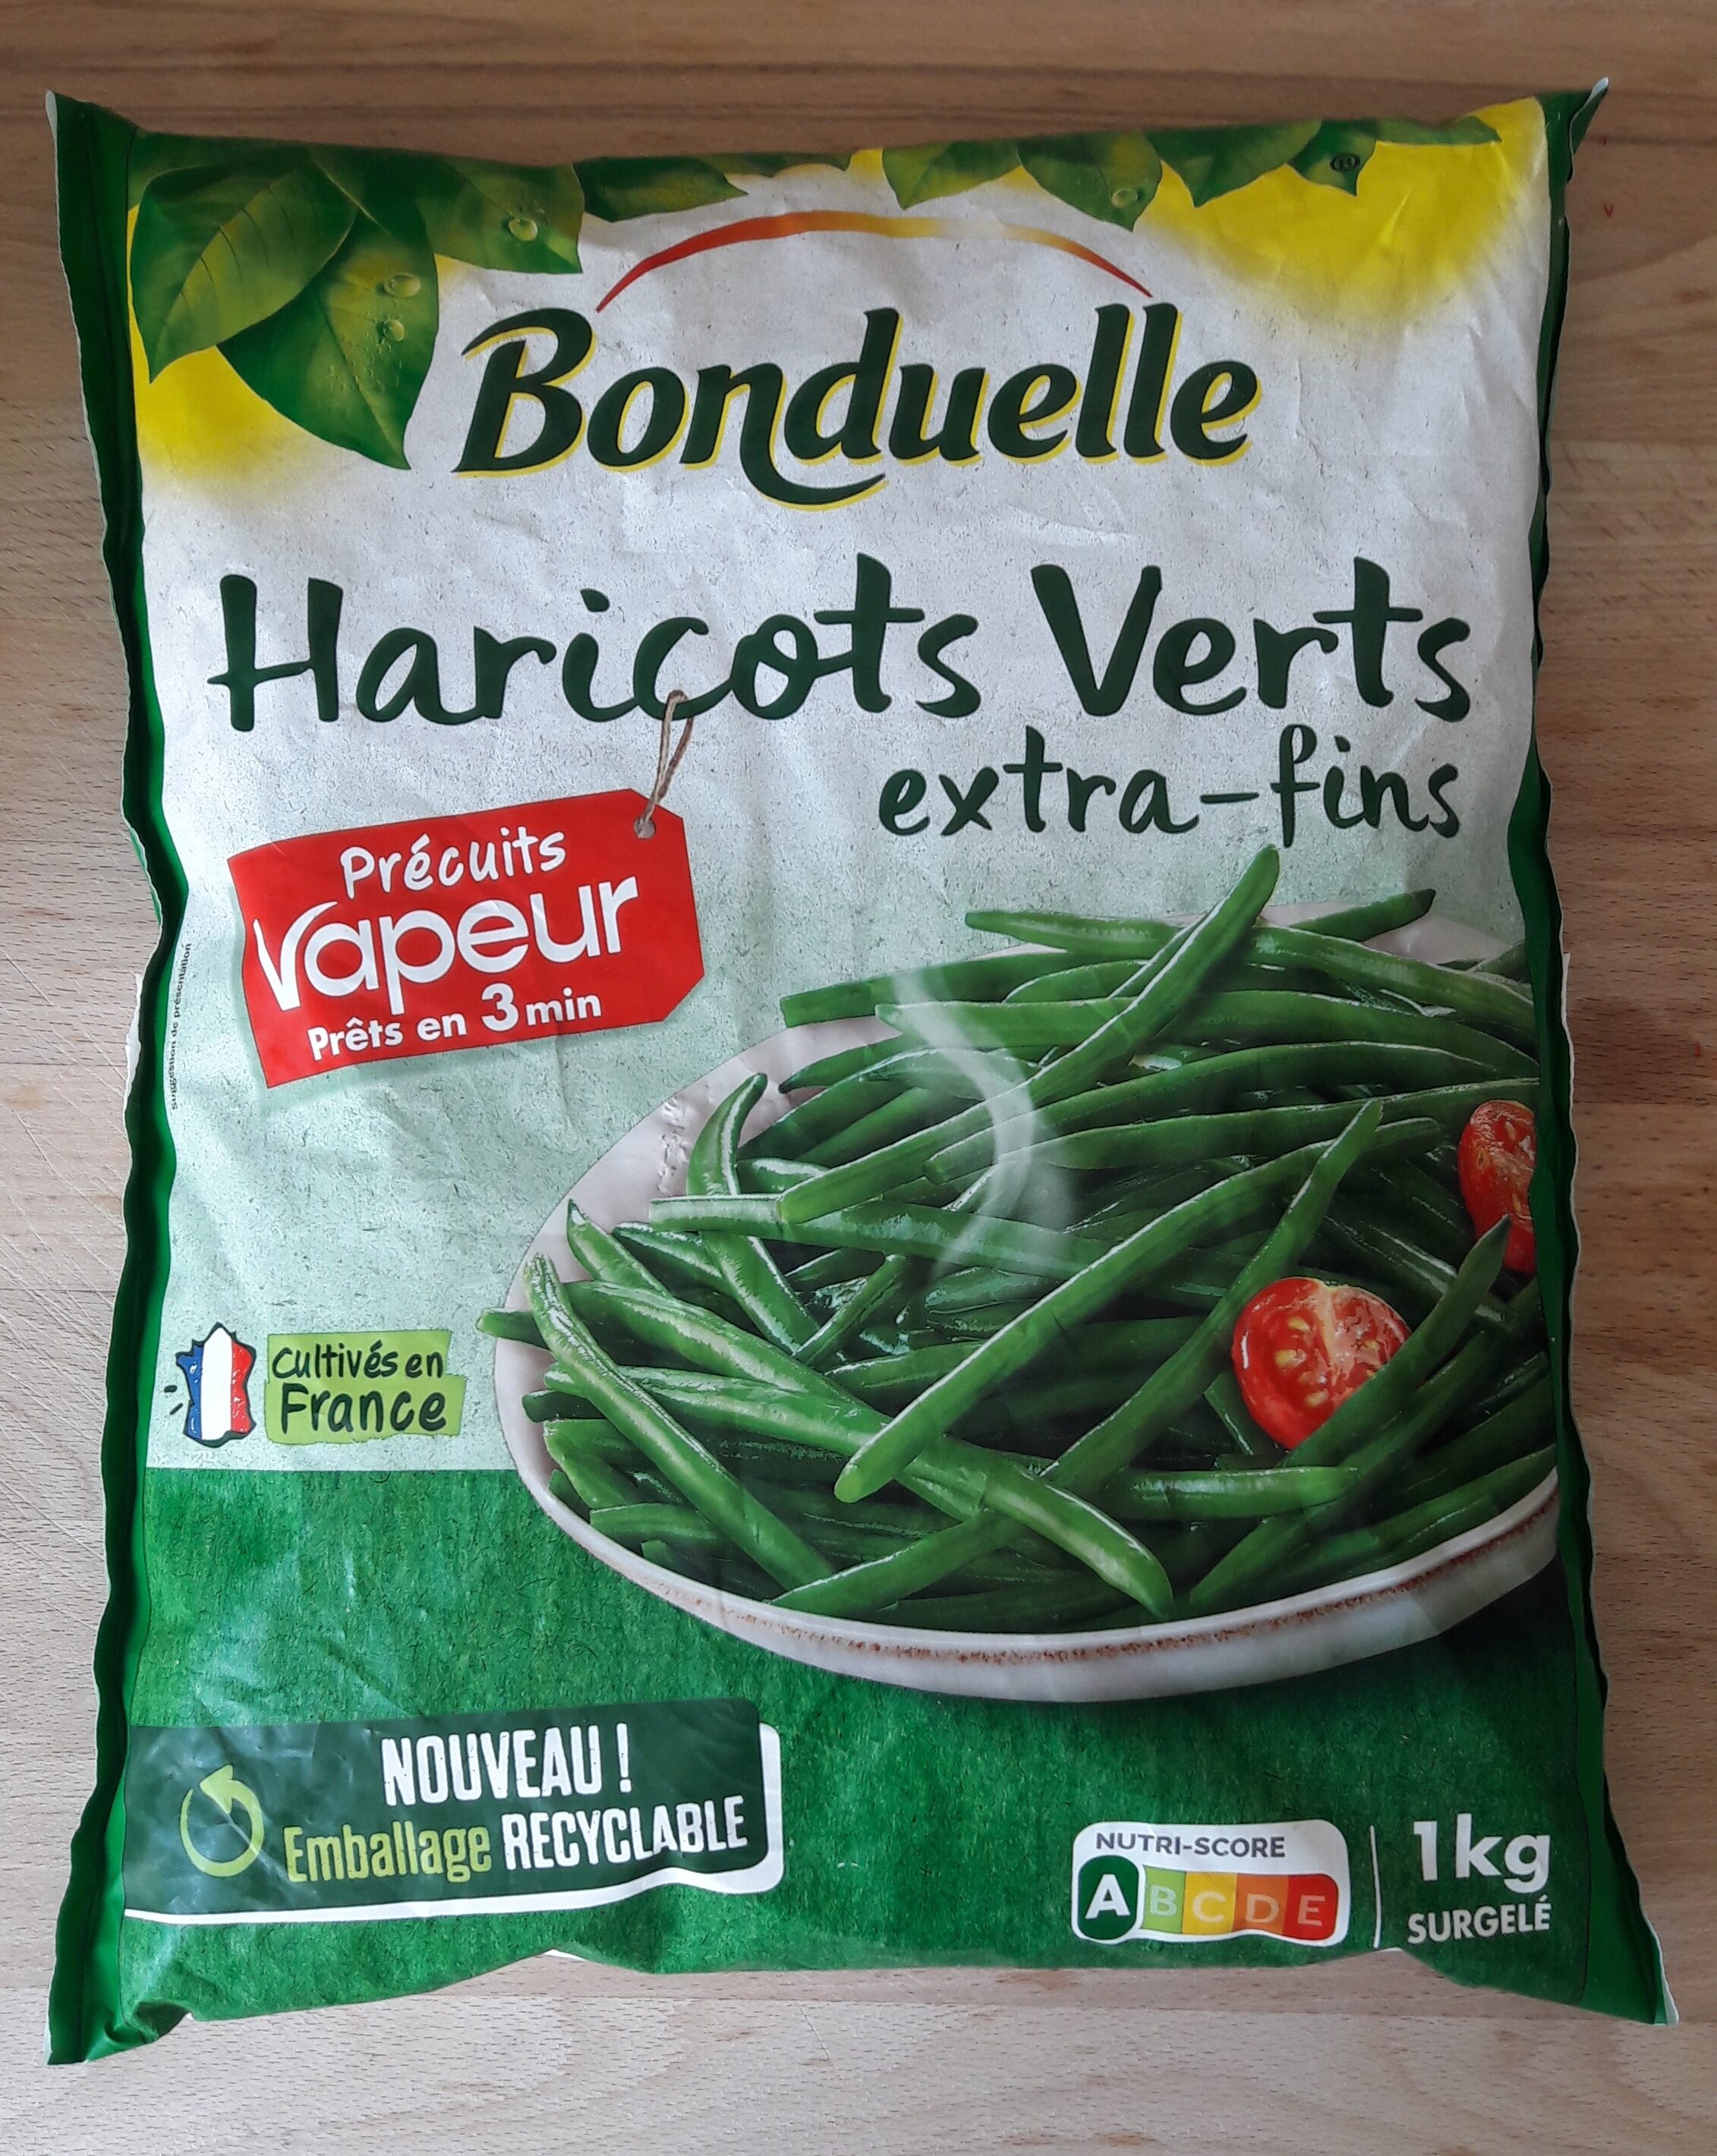 Haricots Verts Extra-fins Précuits Vapeur - Produit